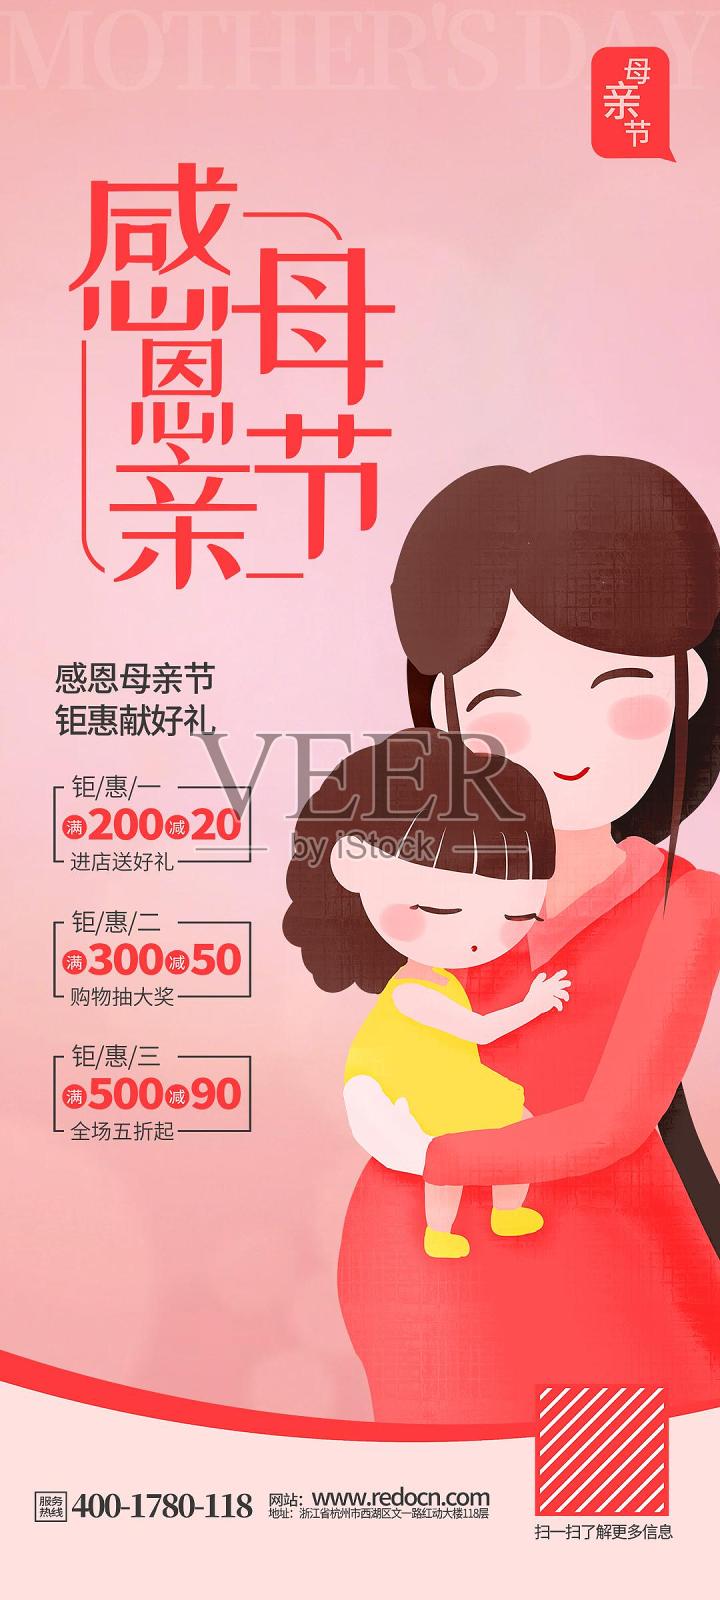 简约大气母亲节活动促销手机端海报设计设计模板素材